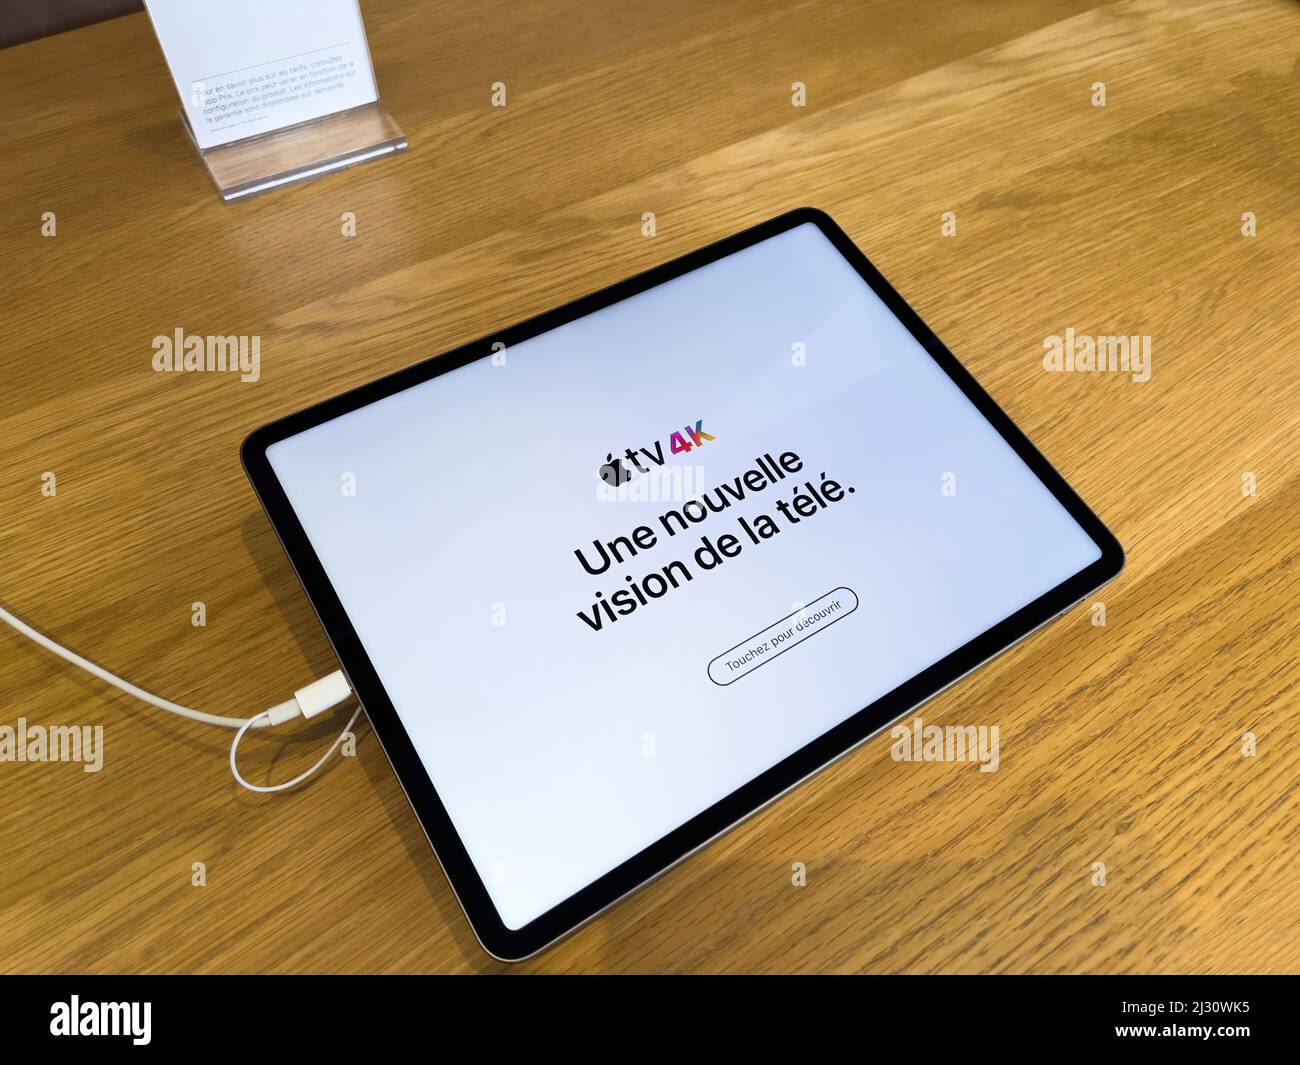 Paris, France - 18 mars 2022: Publicité pour la nouvelle Apple TV 4K sur le grand ipad pro tablette avec slogan une nouvelle vision tv Banque D'Images